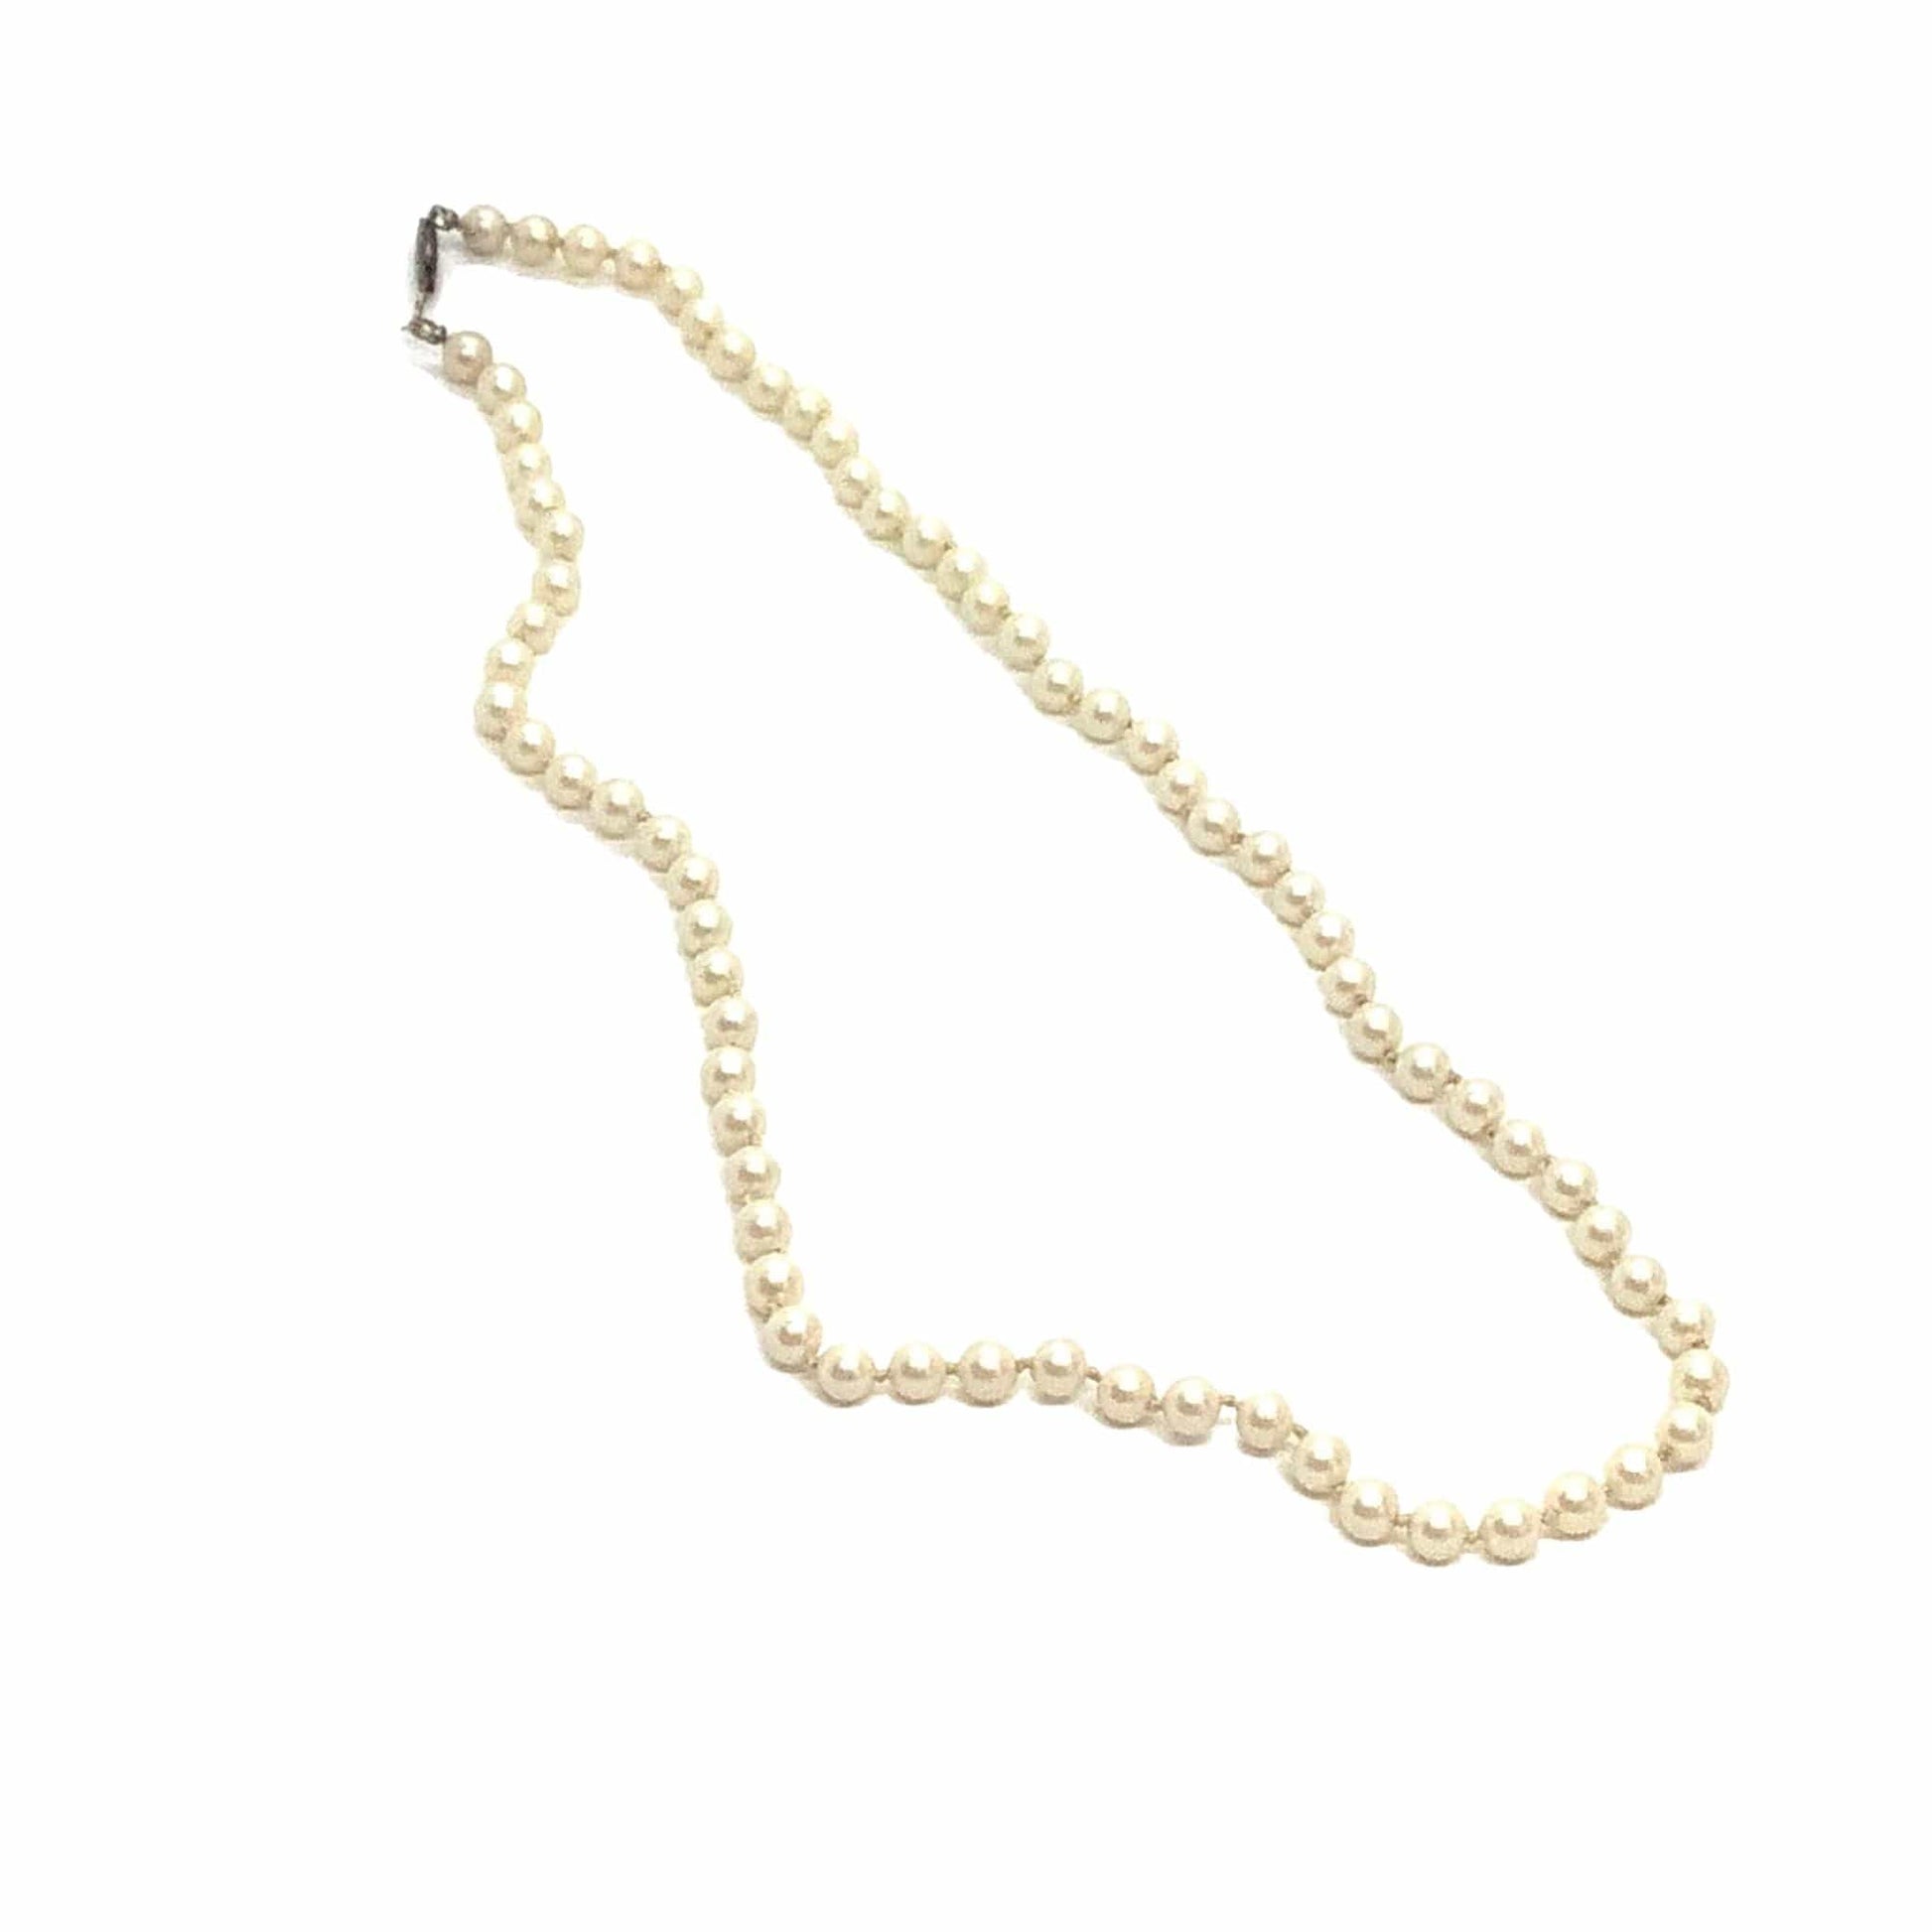 Vintage Pearl Necklace Beige / Pearls / Vintage 1940s